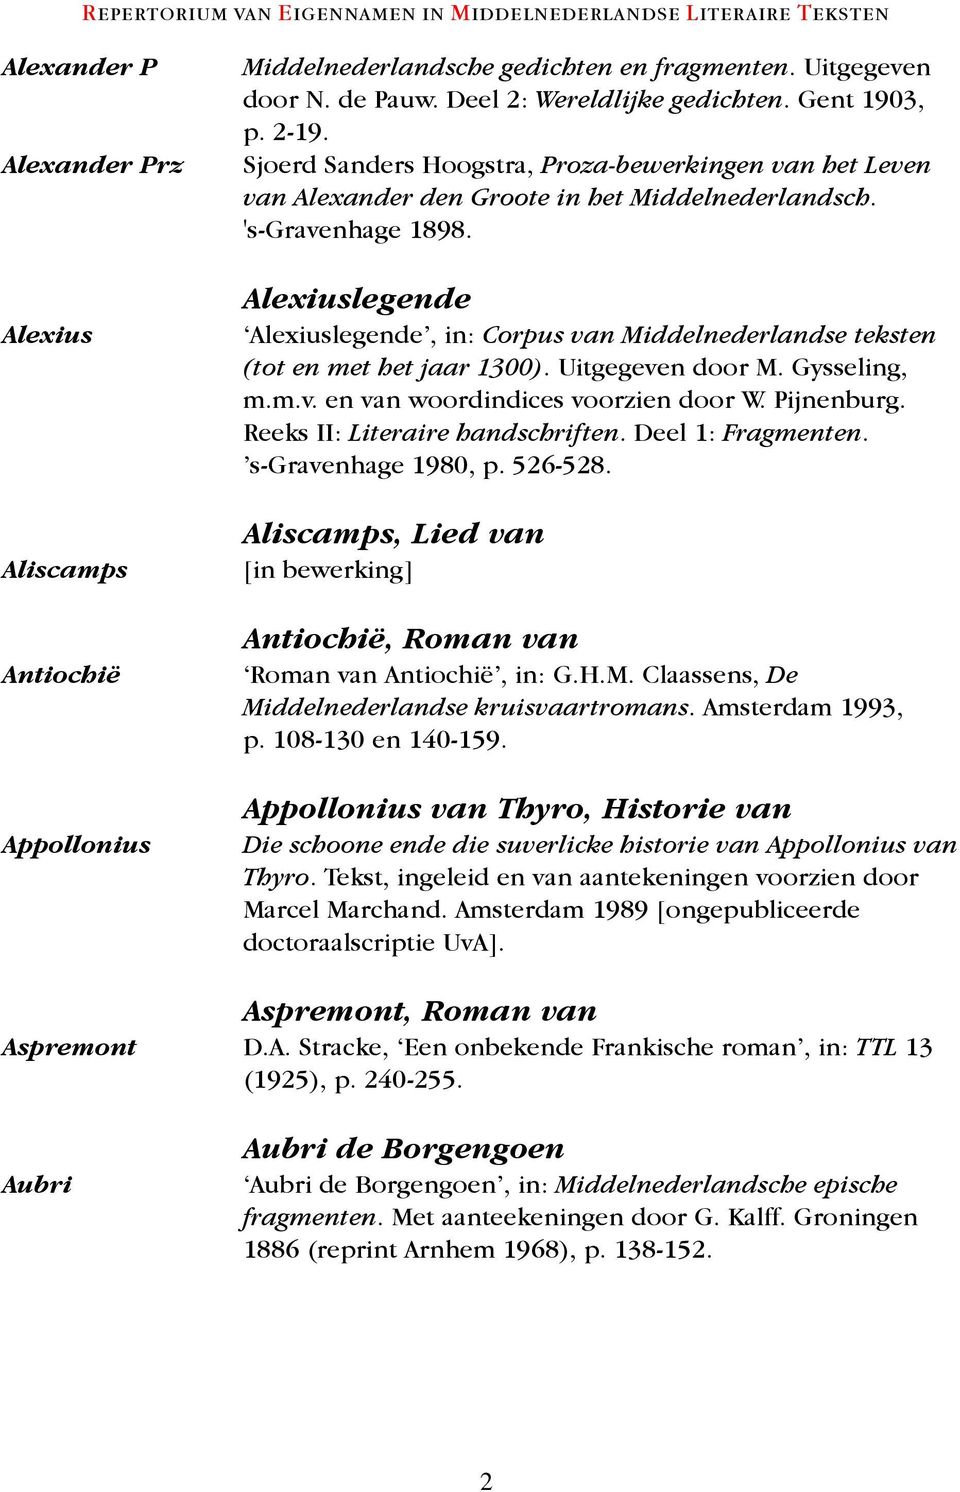 Alexiuslegende Alexiuslegende, in: Corpus van Middelnederlandse teksten (tot en met het jaar 1300). Uitgegeven door M. Gysseling, m.m.v. en van woordindices voorzien door W. Pijnenburg.